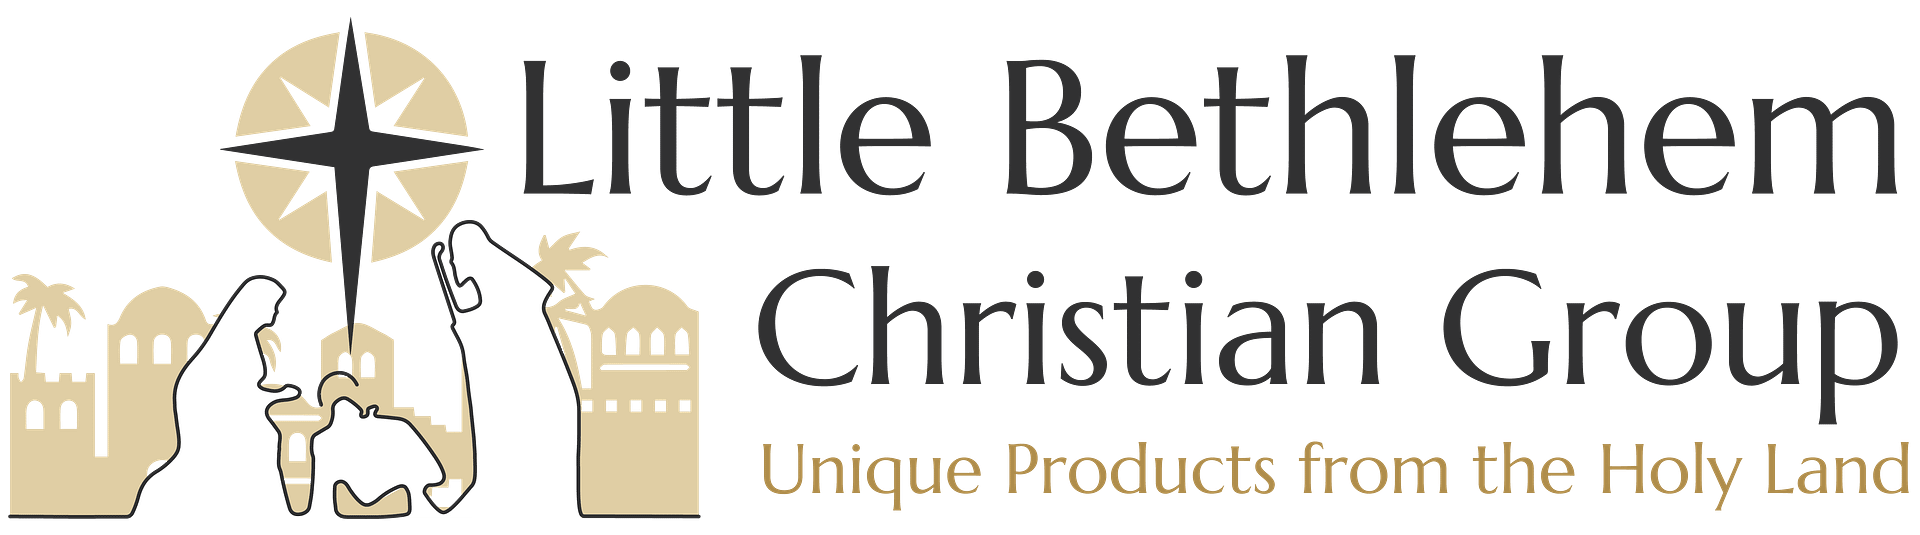 Little Bethlehem